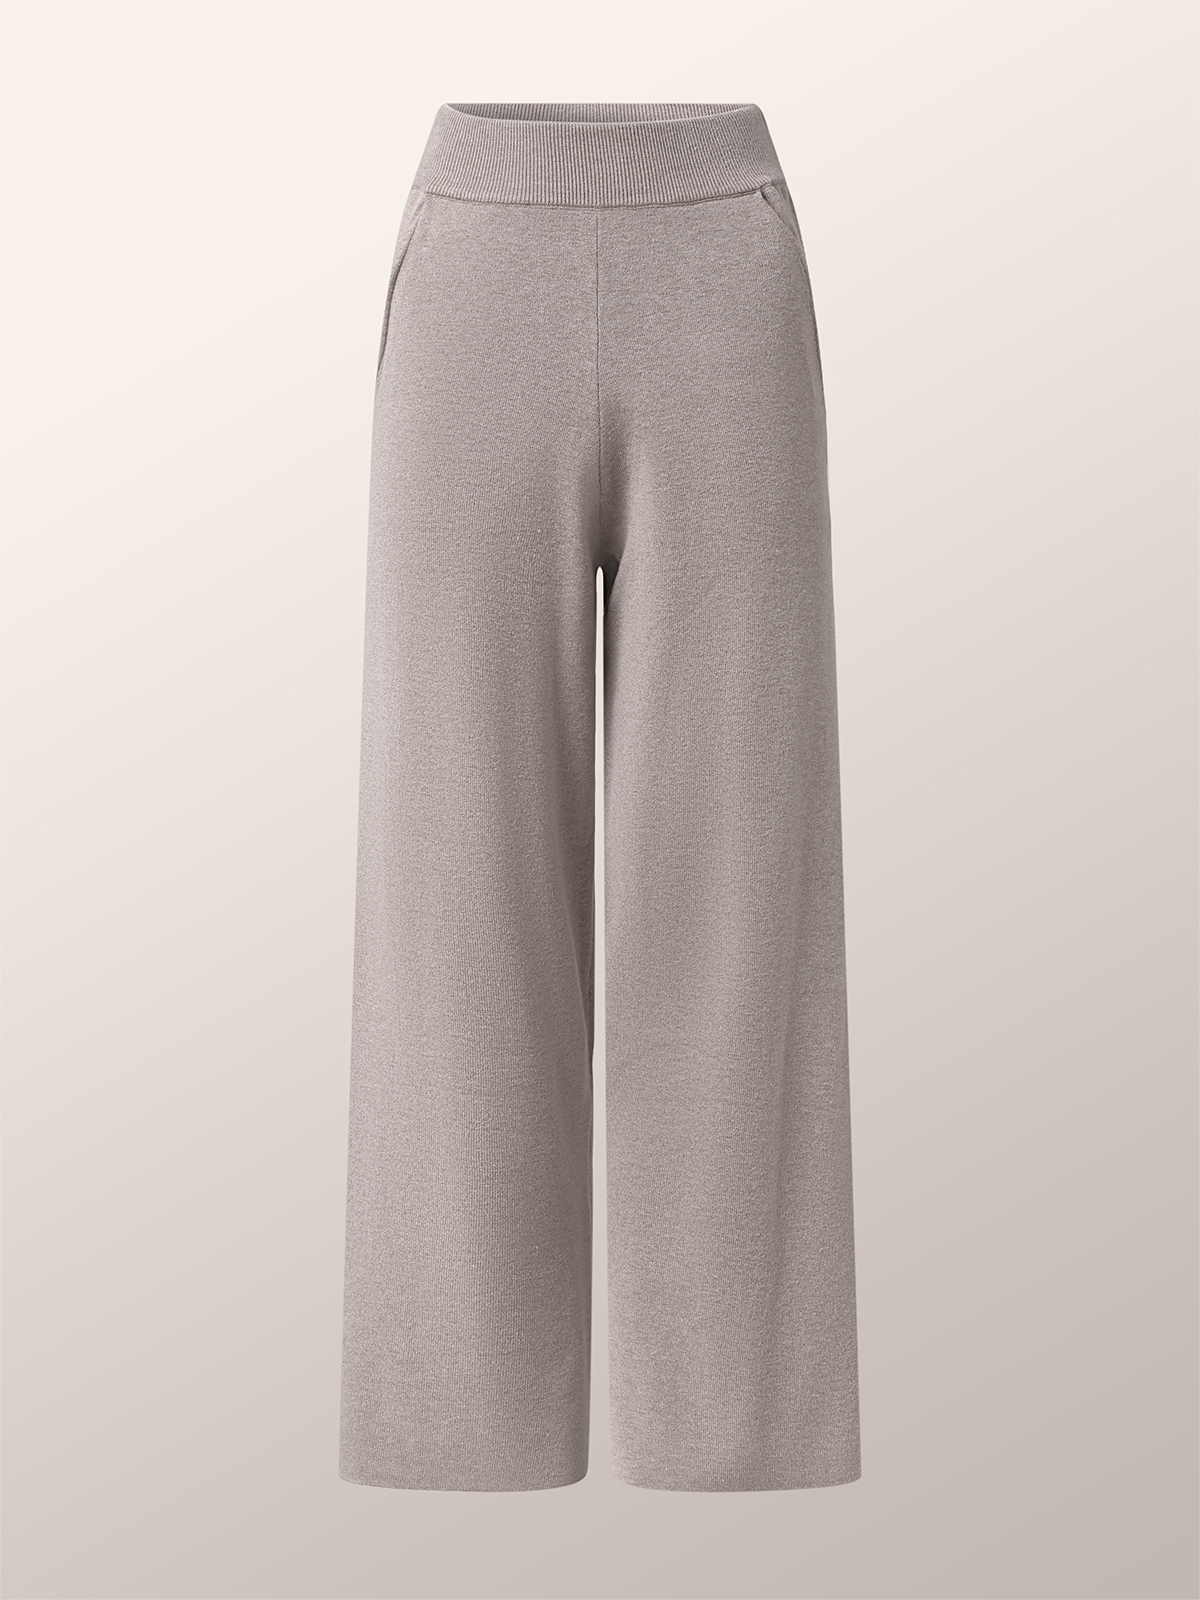 Pantalons Femmes Plain Printemps / Automne Urbain Tricoté Taille Haute Aucune élasticité Long Droit Régulier